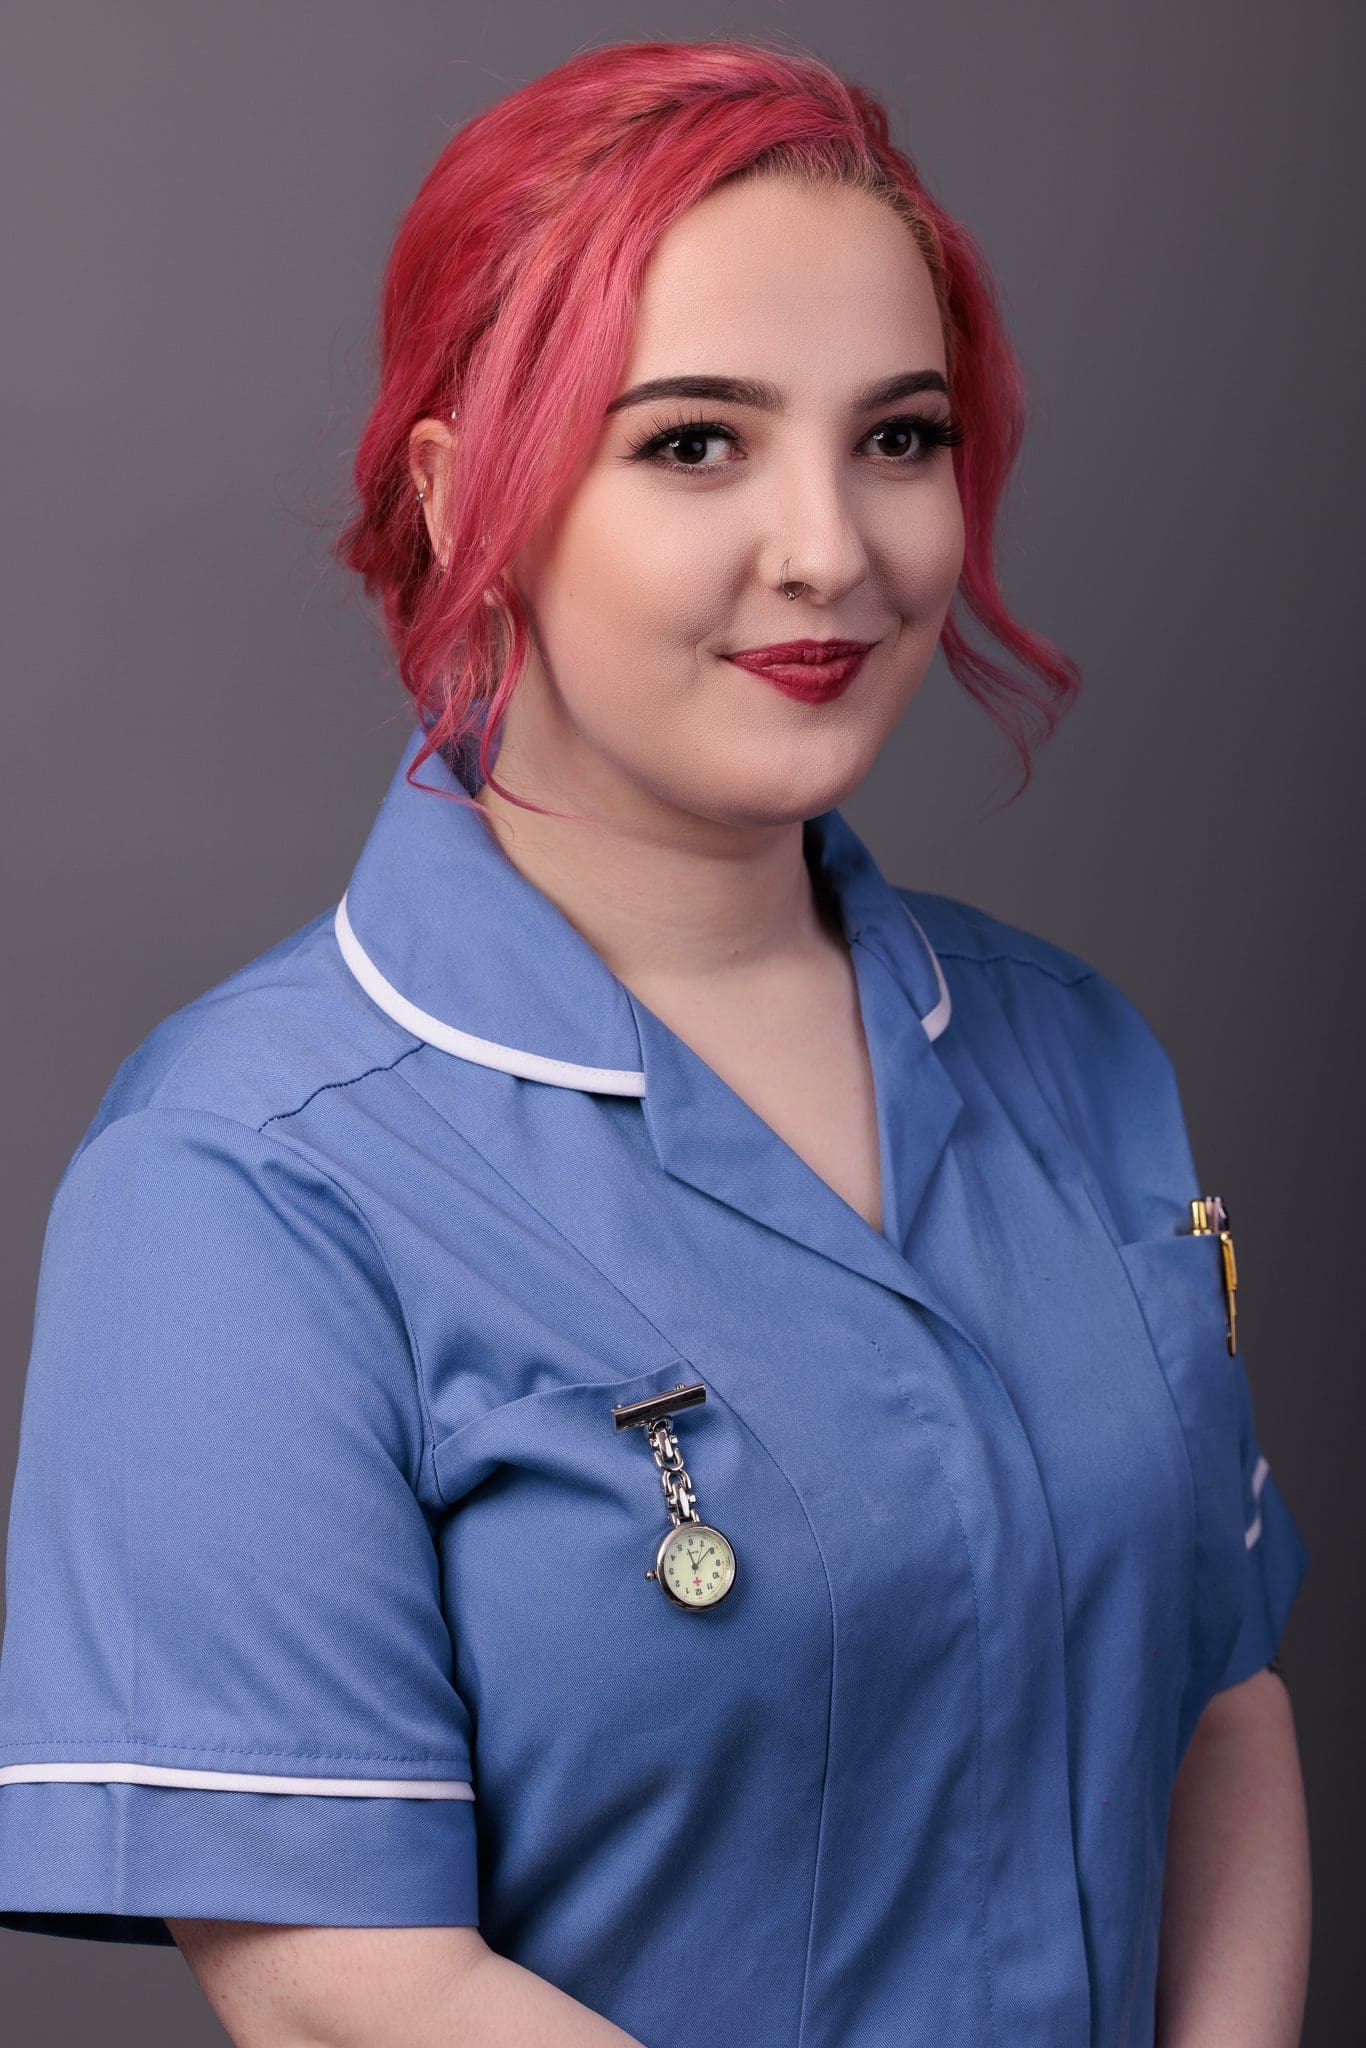 linkedin portraitr nurse uniform